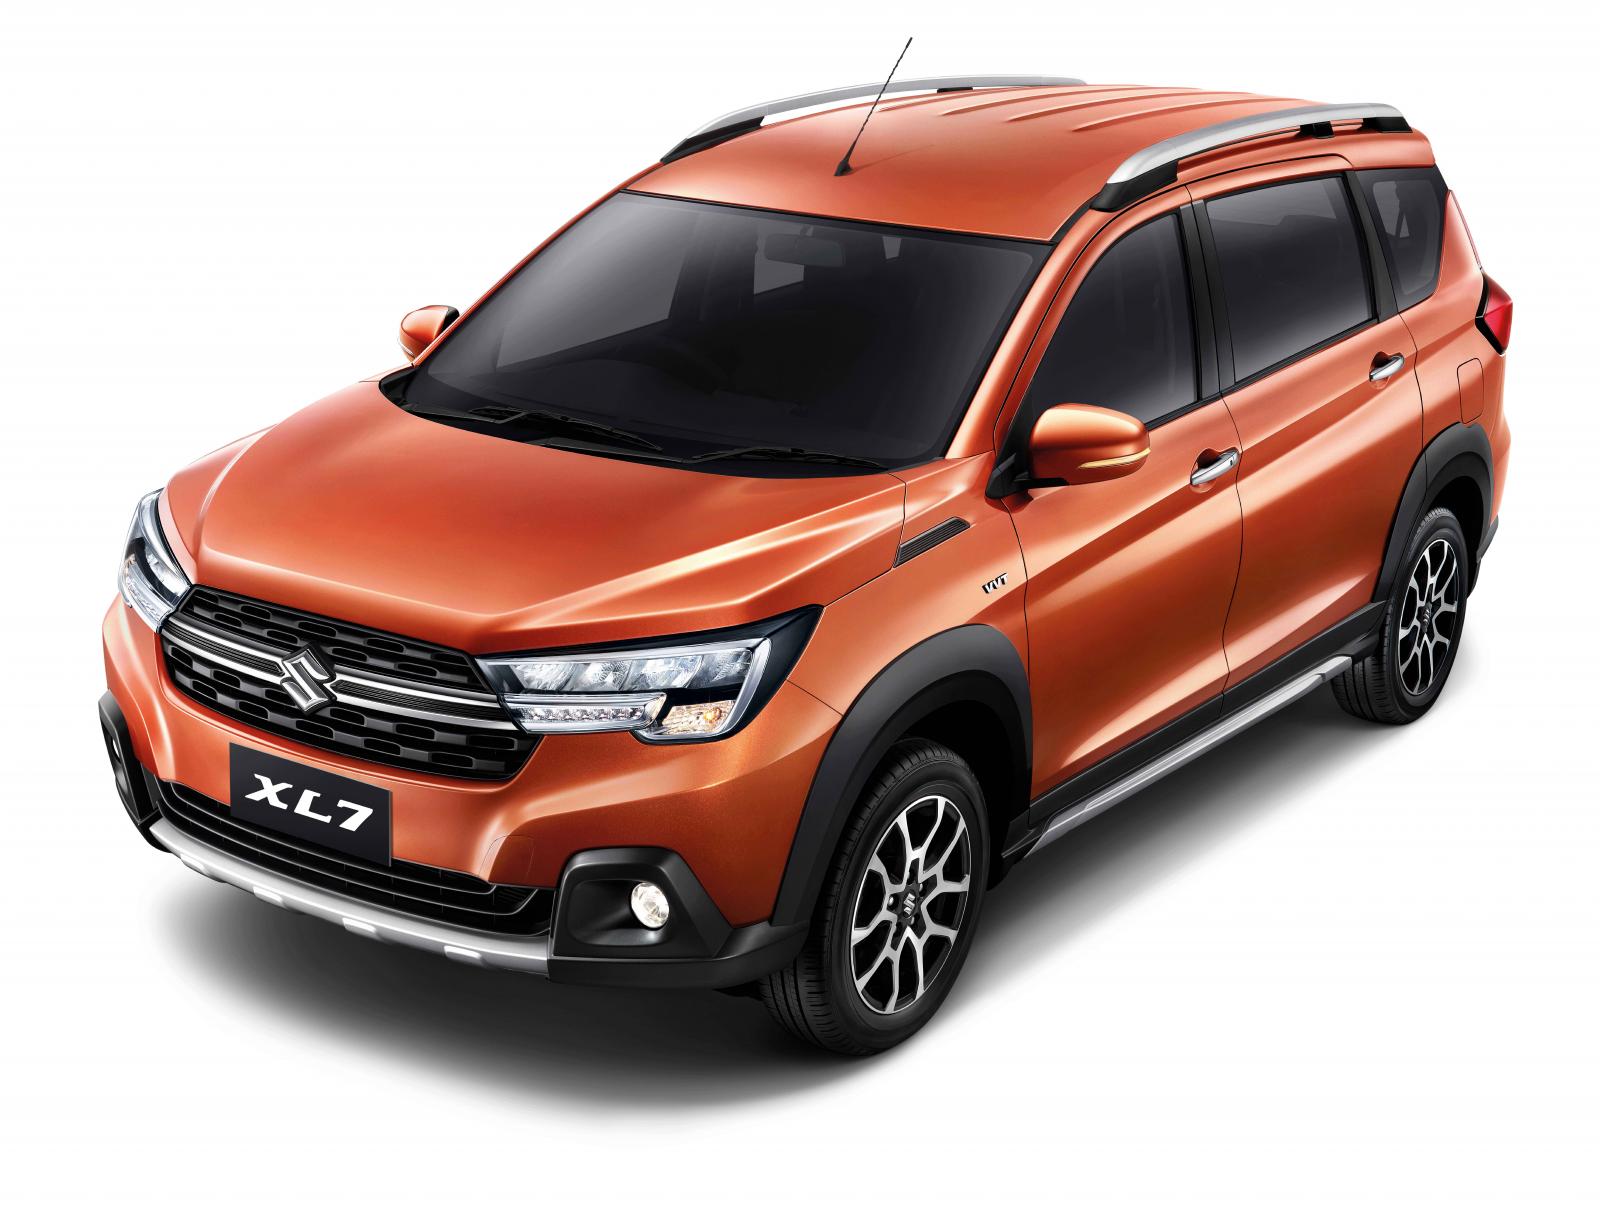 ราคาและตารางผ่อน ดาวน์ Suzuki XL7 2020